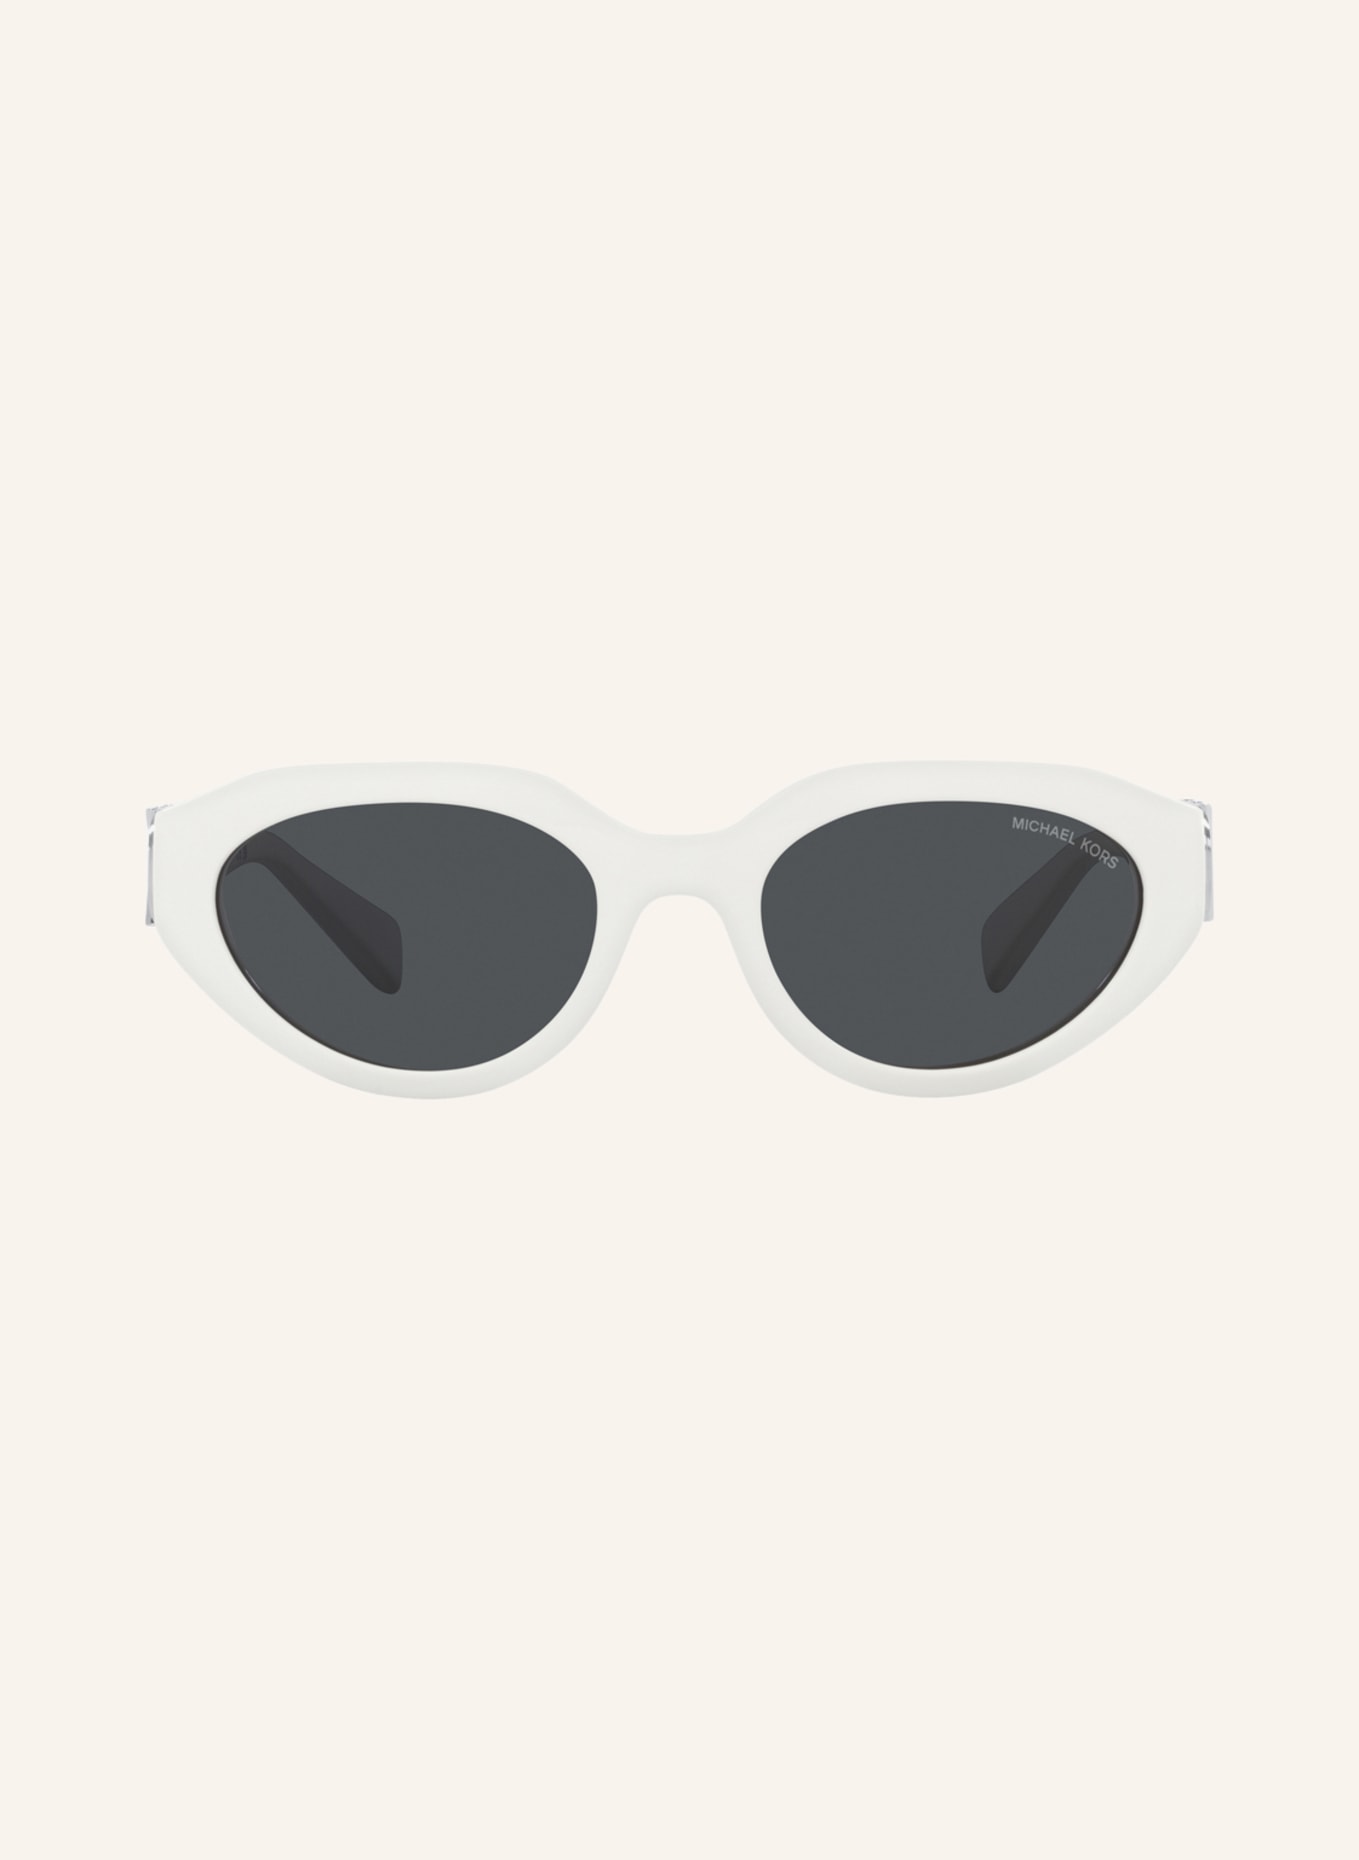 MICHAEL KORS Sunglasses MK2192 in 310087  white dark gray  Breuninger